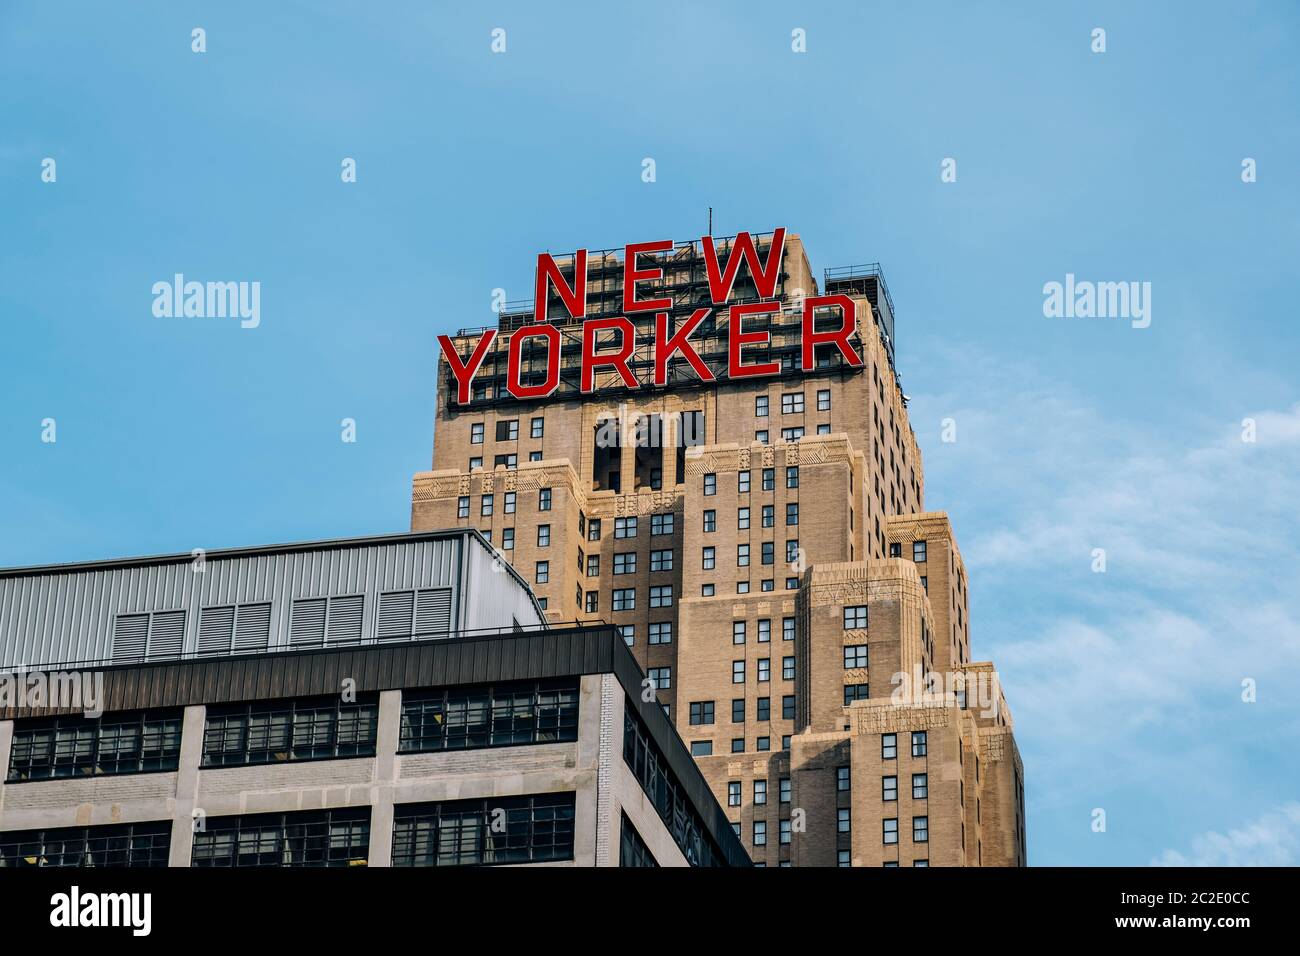 Vista cercana de la señal de New Yorker en la parte superior del Wyndham New Yorker Hotel en el centro de la ciudad de Nueva York Foto de stock